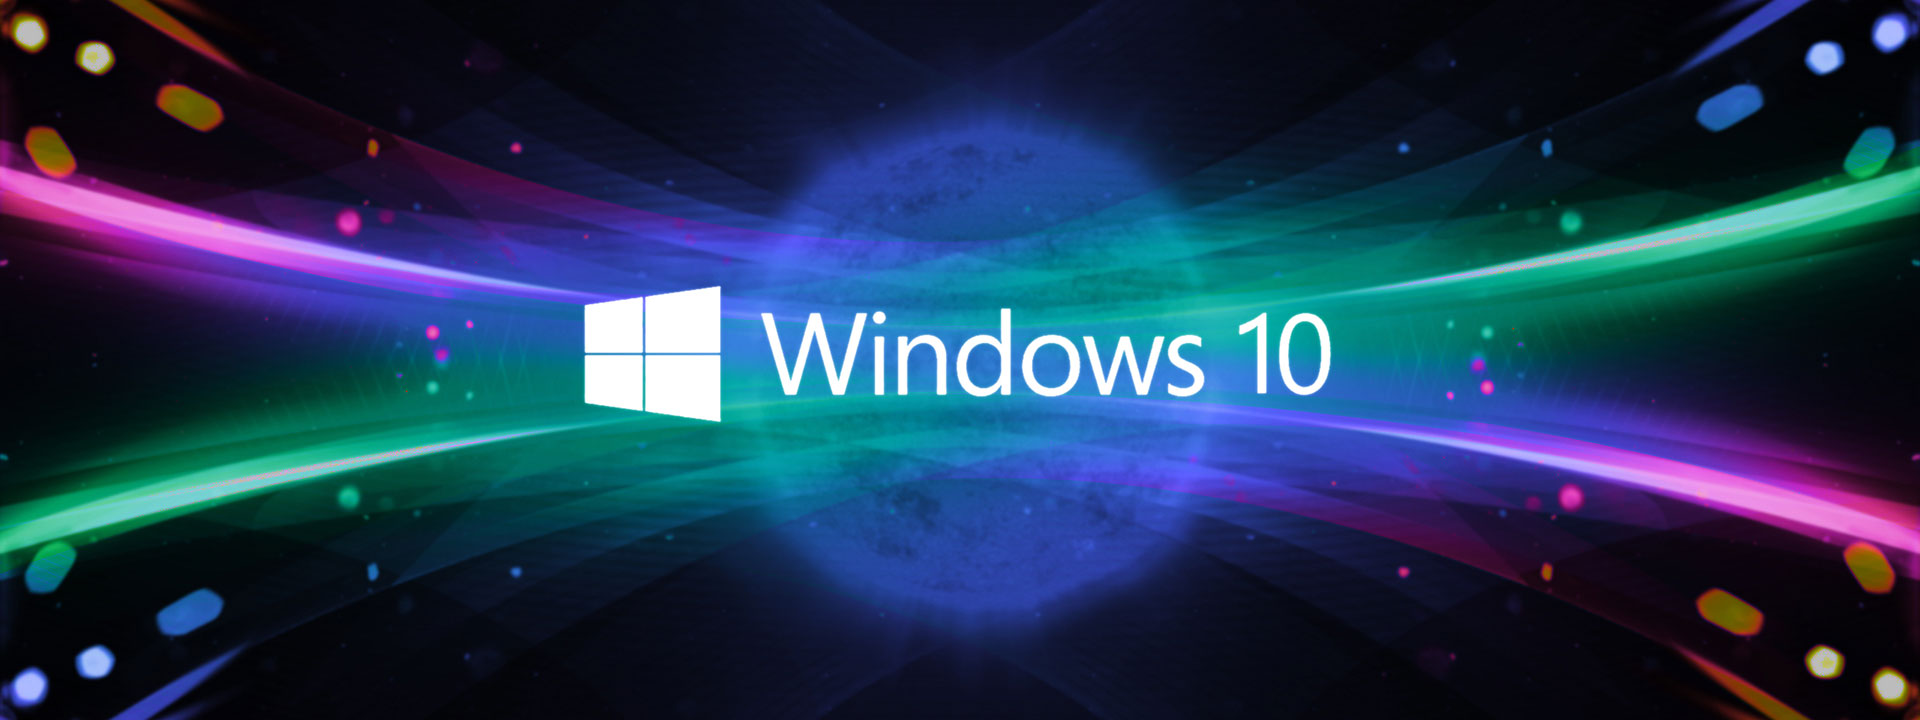 Việc cập nhật Windows 10 giúp tăng tốc độ hệ điều hành, bảo mật tốt hơn và có nhiều tính năng mới hơn. Bạn sẽ không muốn bỏ lỡ bất kỳ cập nhật nào với hình ảnh liên quan để trải nghiệm những tính năng đặc biệt và tốt hơn.